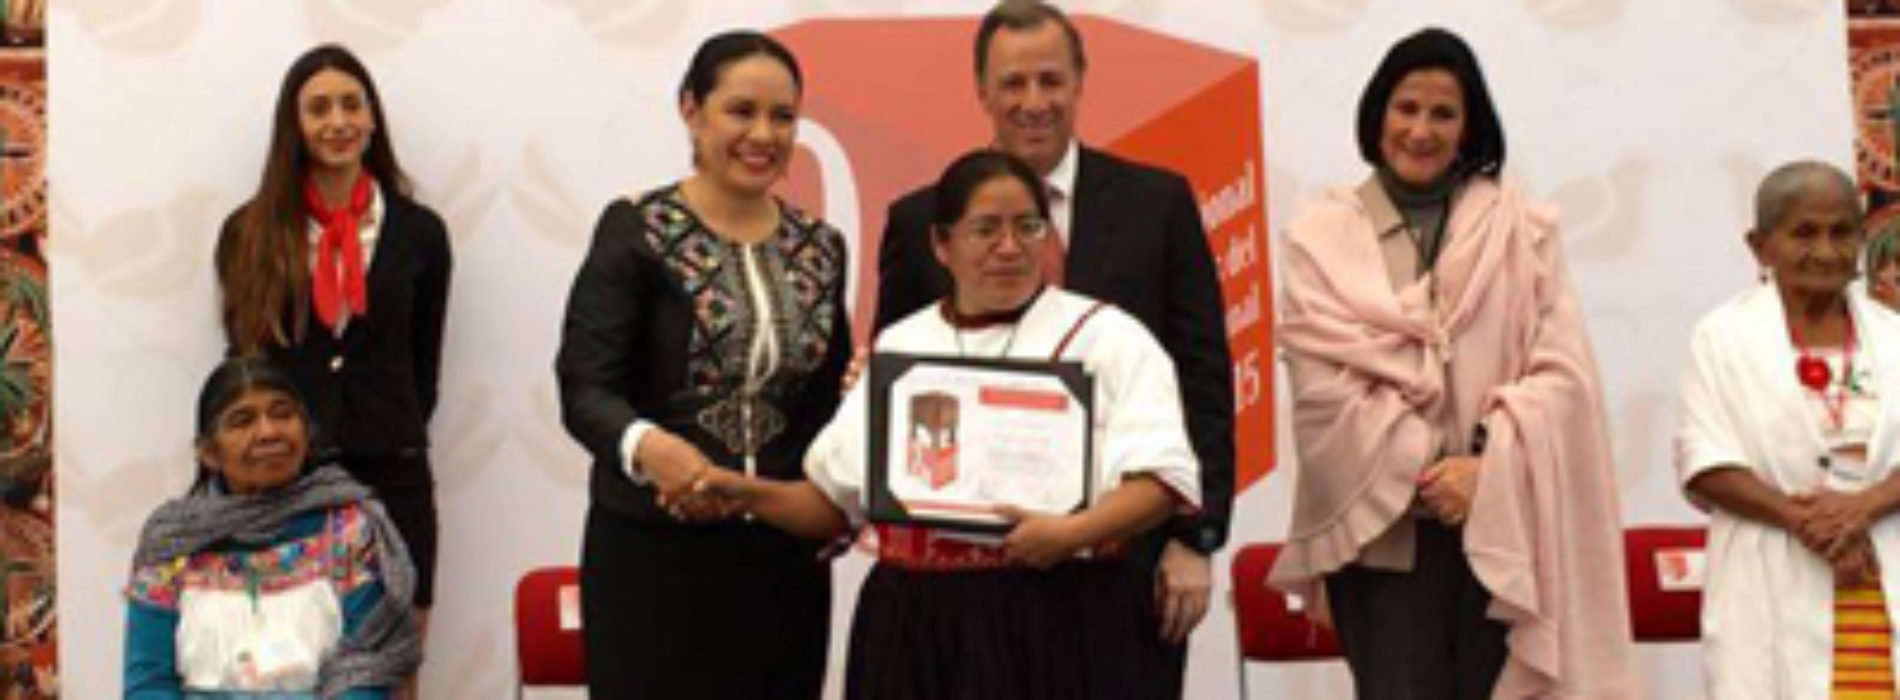 Destaca Oaxaca en Segundo Concurso Nacional Grandes Maestros del Patrimonio Artesanal de México 2015